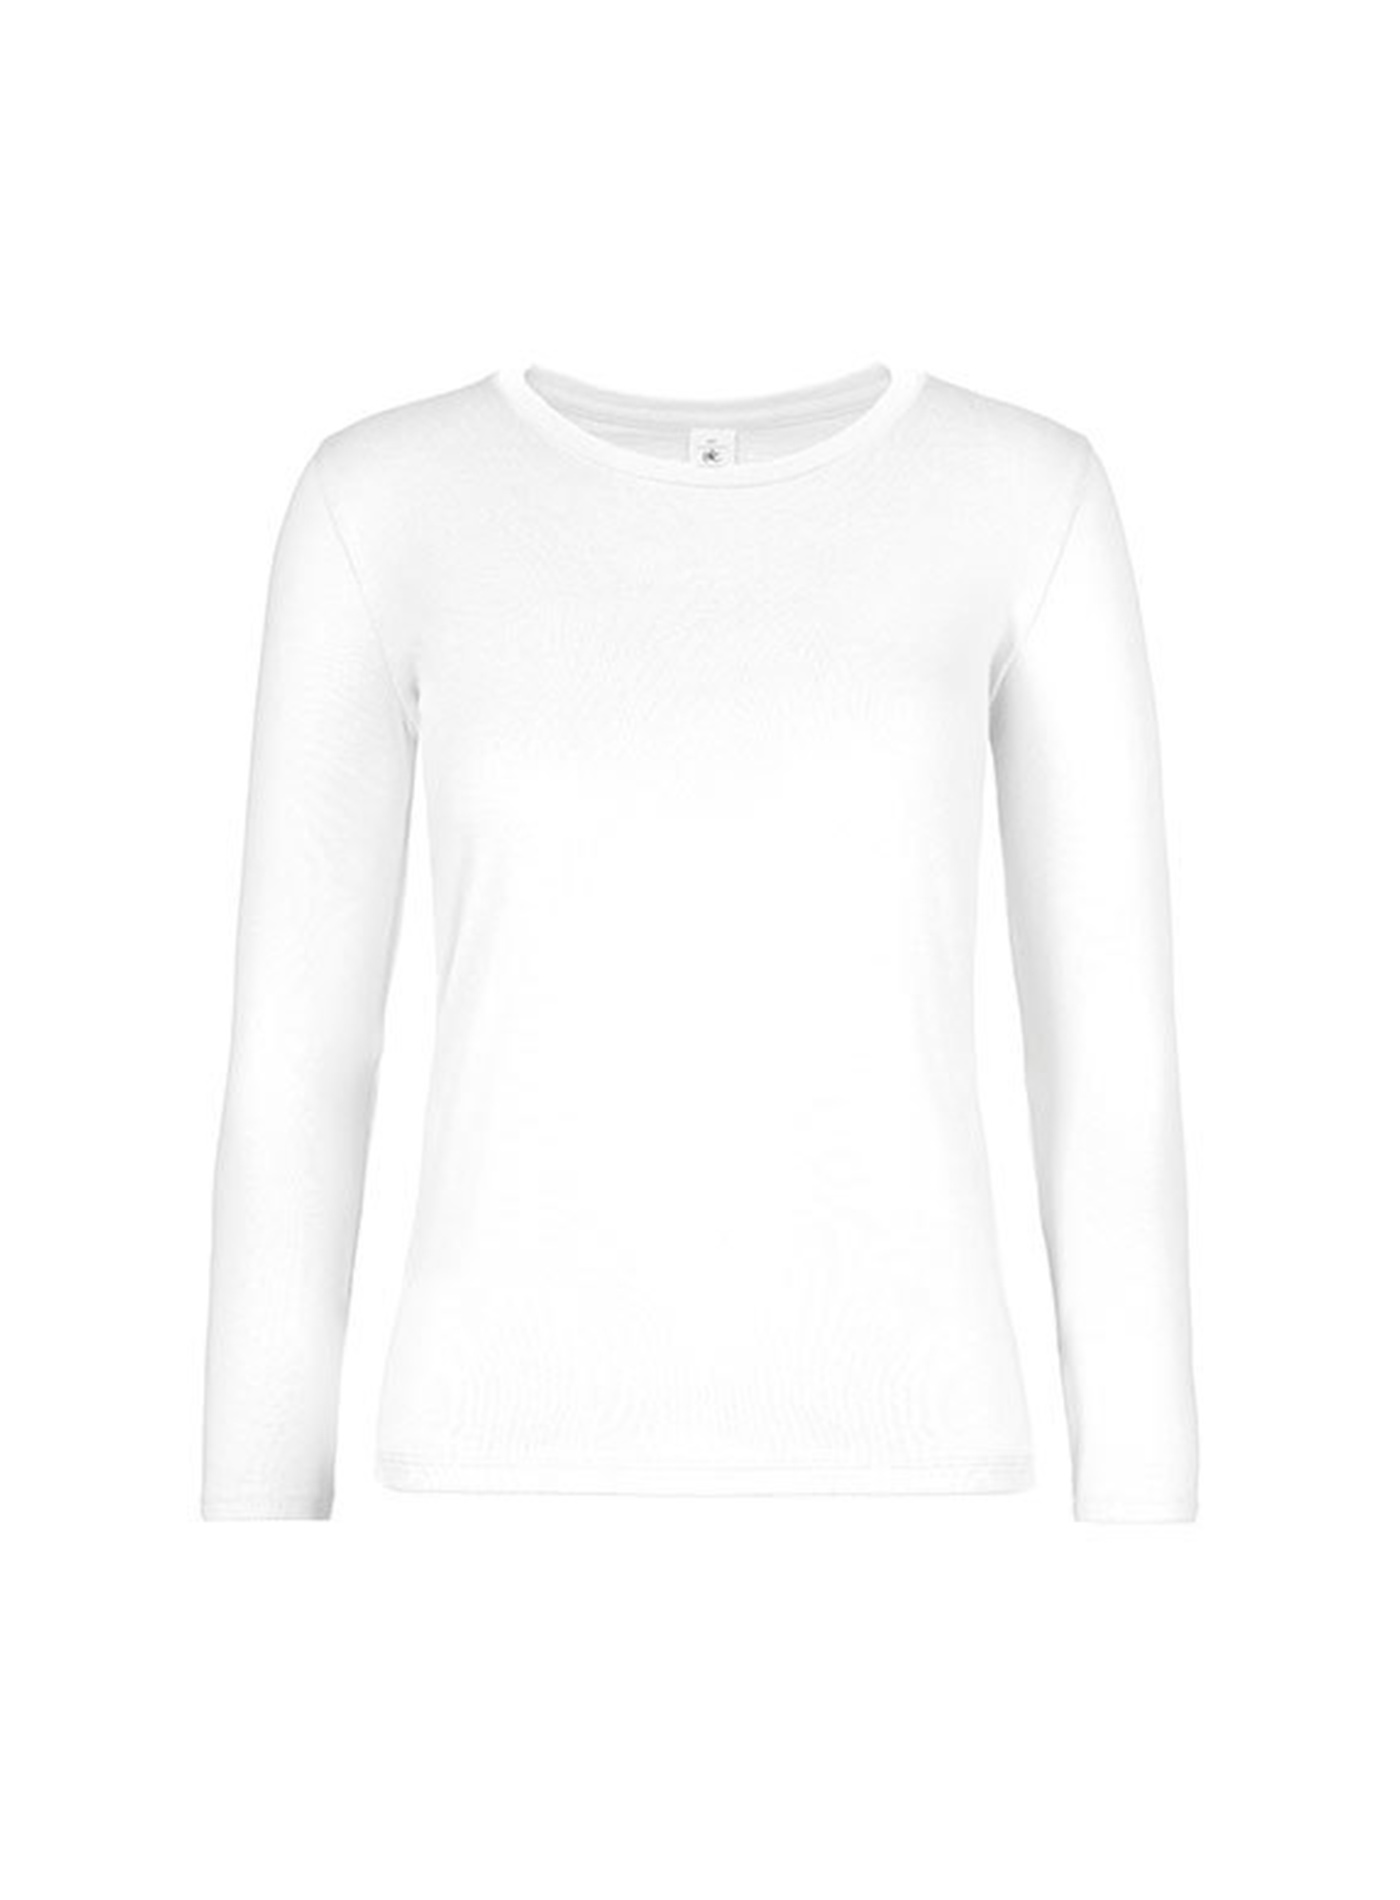 Dámské tričko s dlouhým rukávem B&C Collection - Bílá M